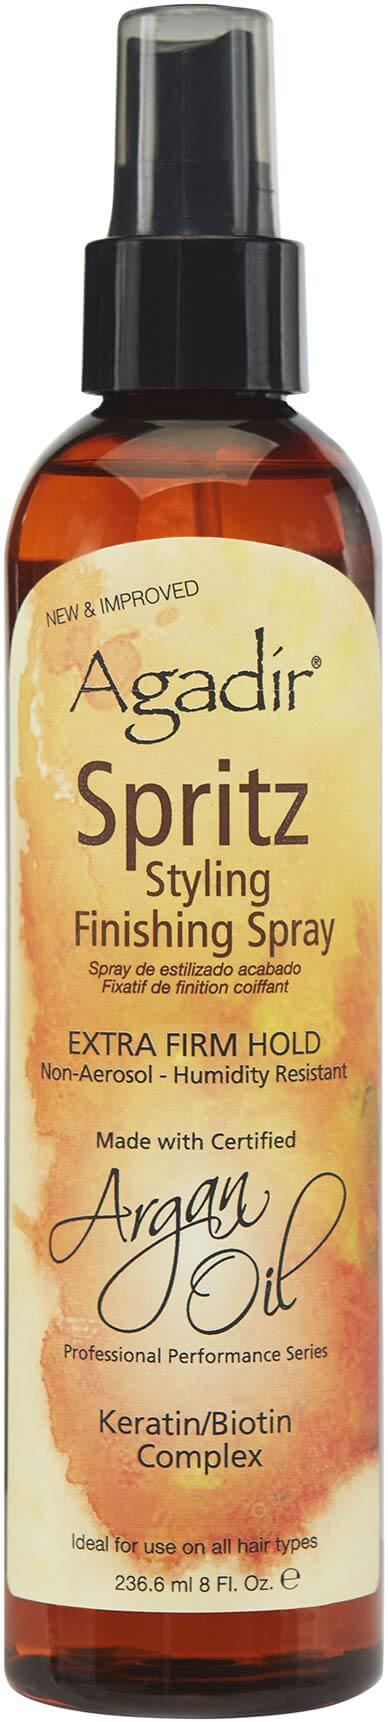 Стайлинг финиш-спрей Agadir Argan Oil Extra Firm Spritz 236ml